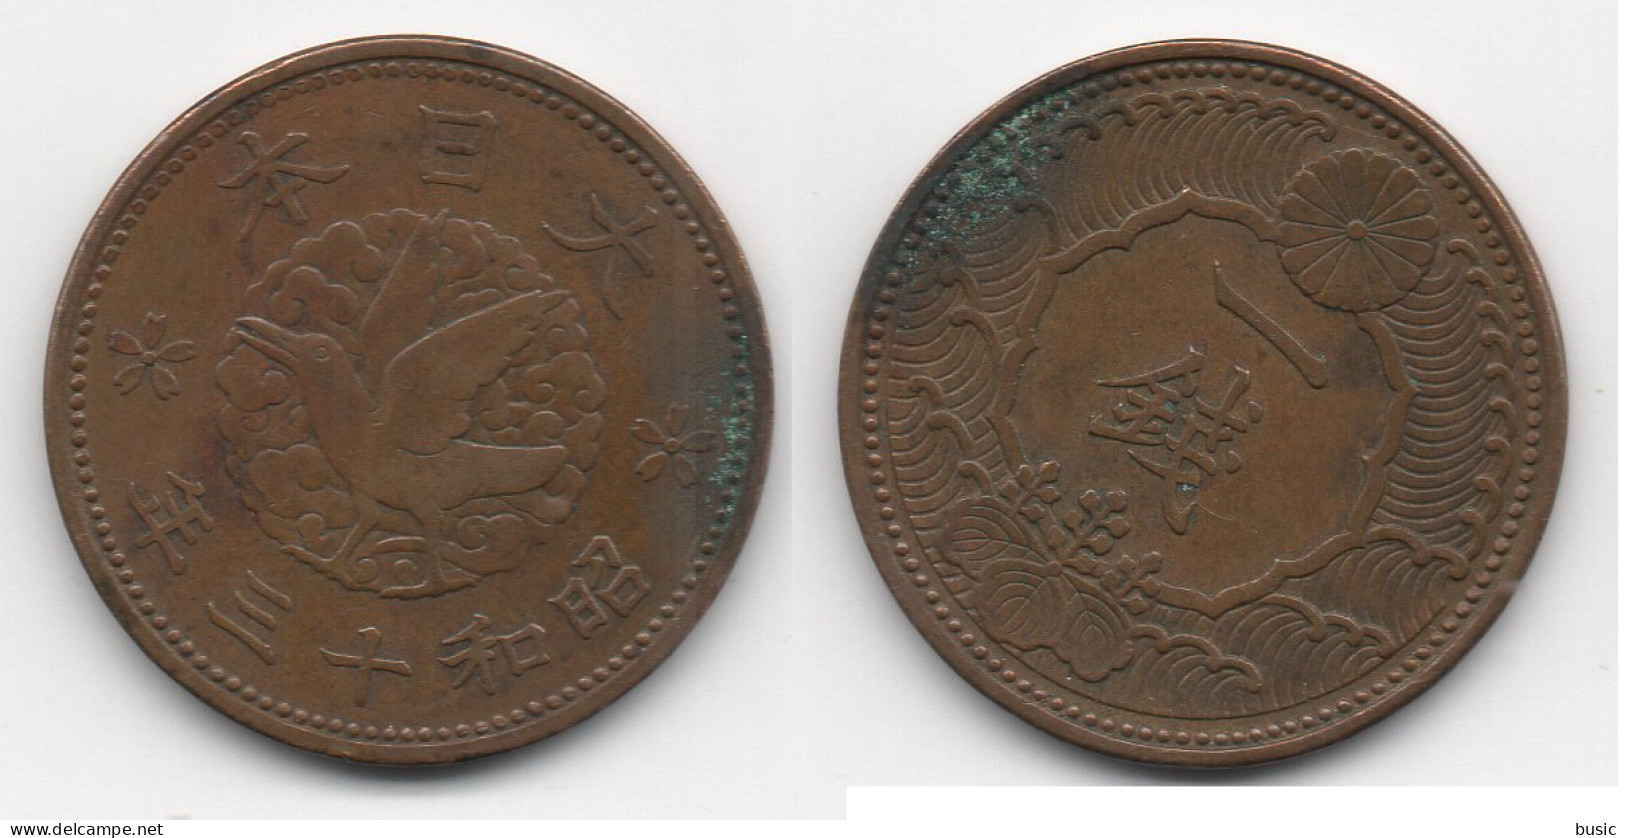 + JAPON + 1 SEN 1900 ( A IDENTIFIER  )+ - Giappone